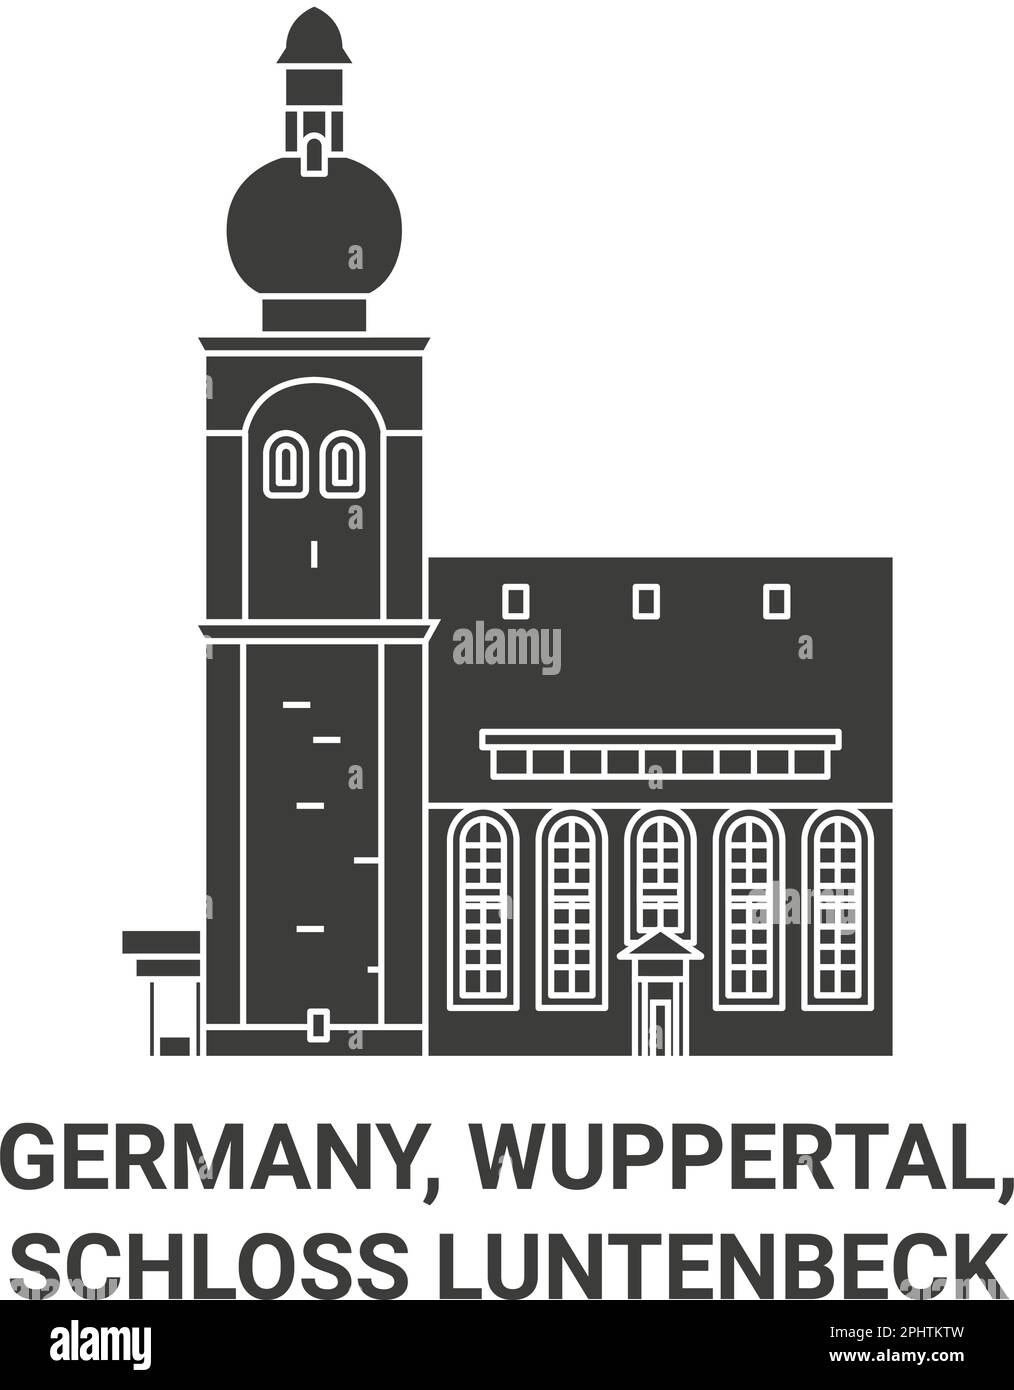 Deutschland, Wuppertal, Schloss Luntenbeck Reise-Wahrzeichen-Vektordarstellung Stock Vektor